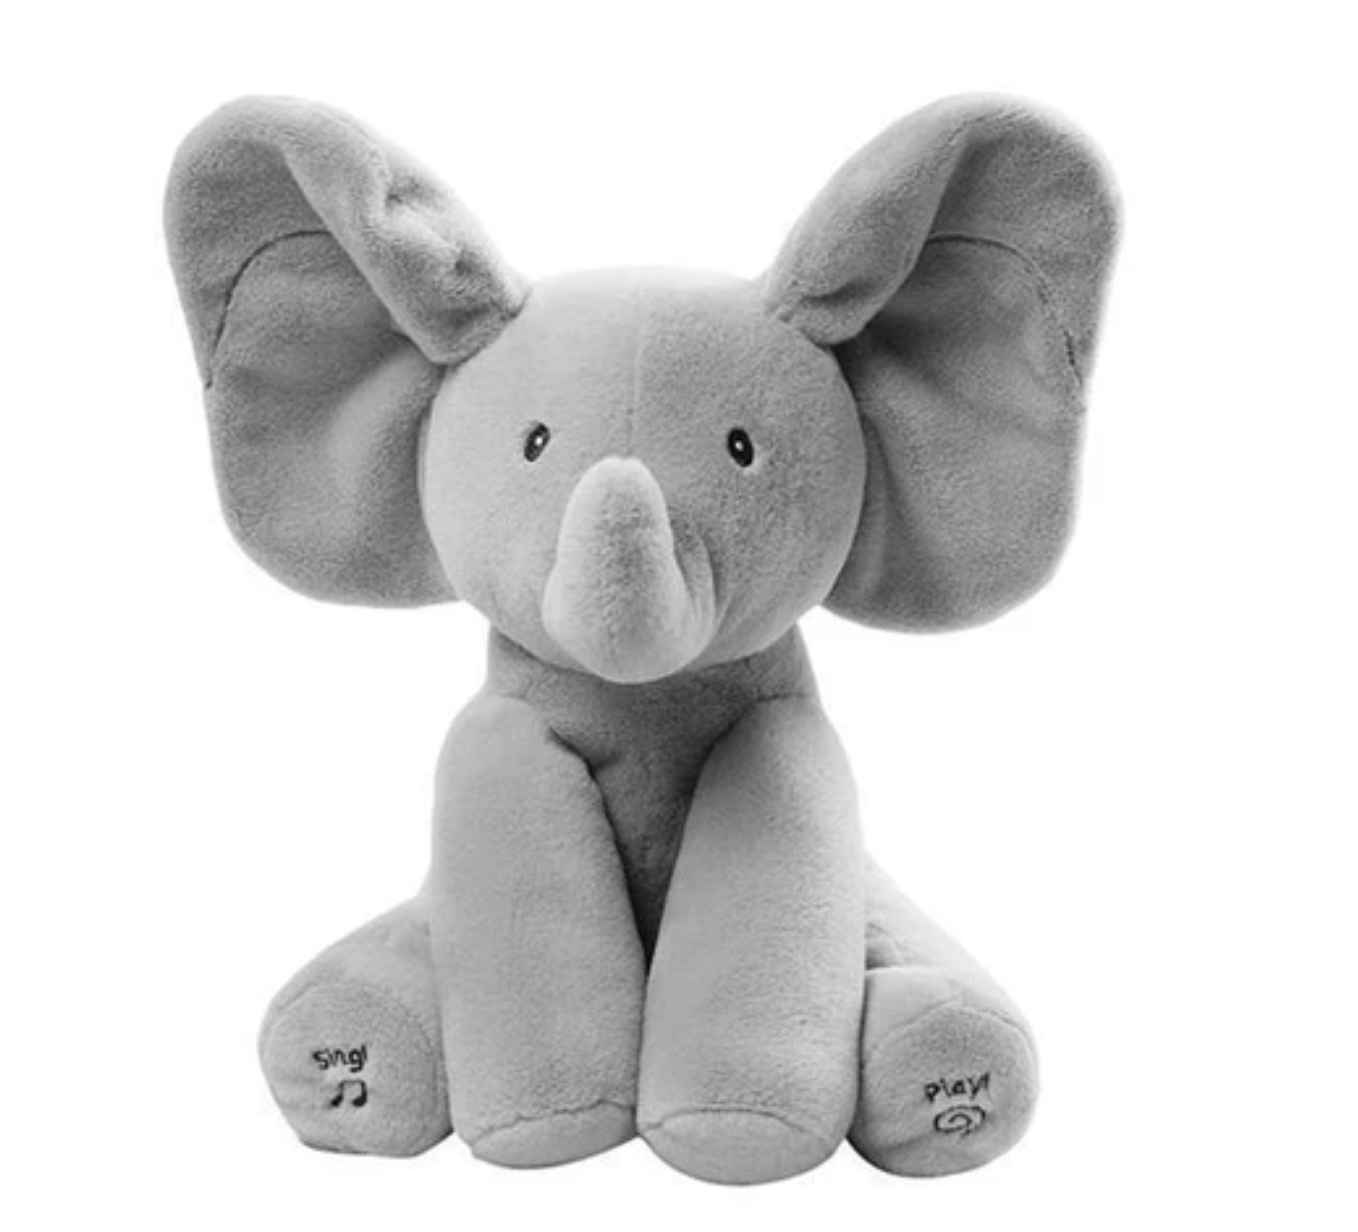 where can i buy peek a boo elephant